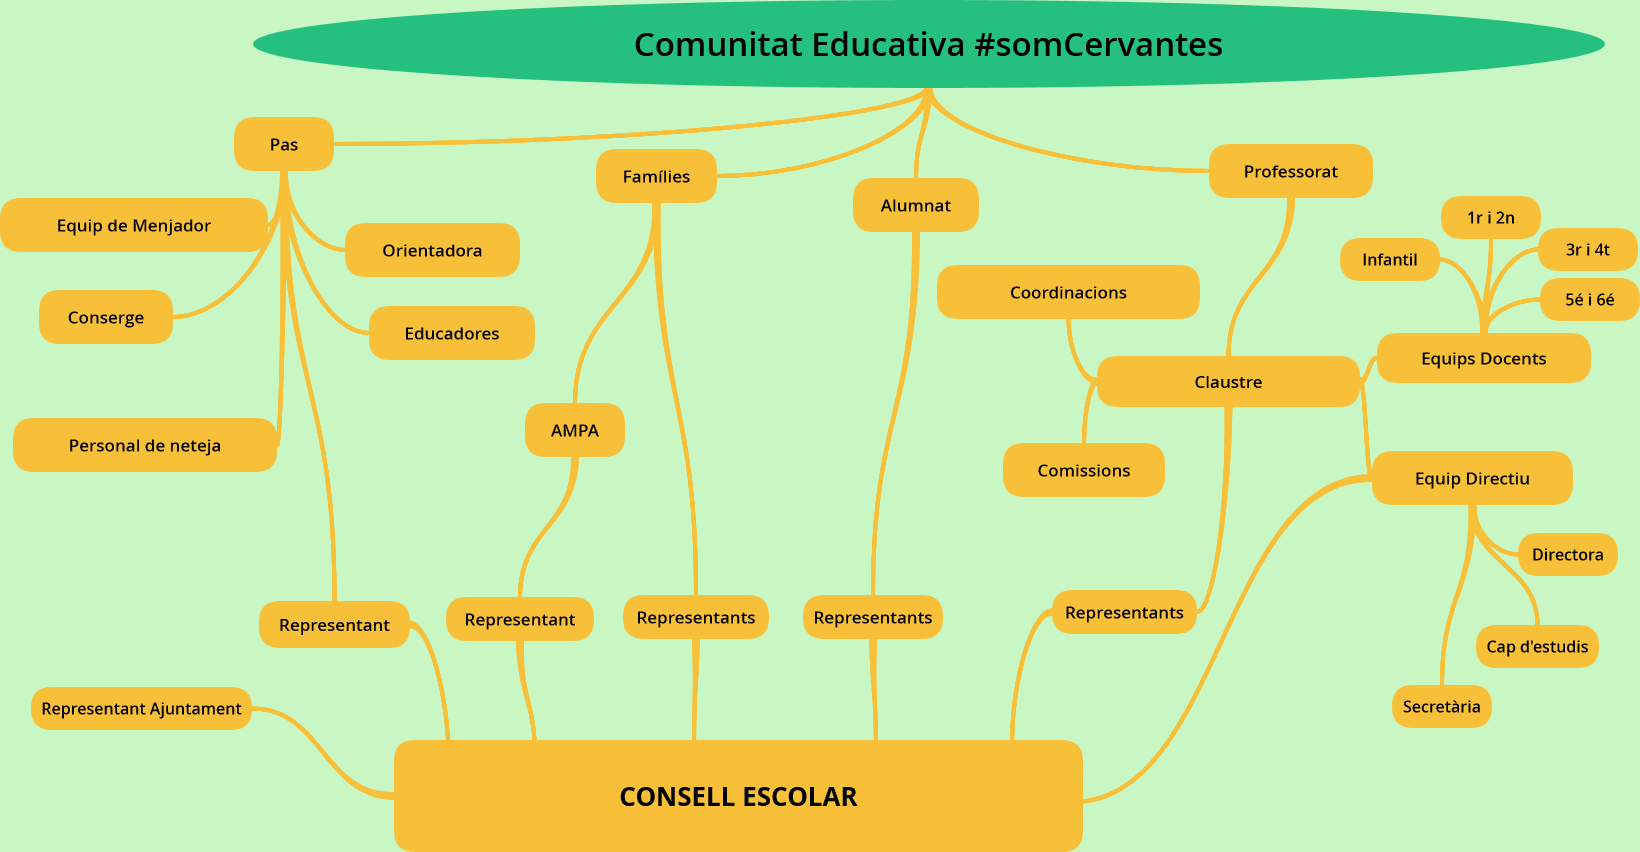 Comunitat Educativa #somCervantes